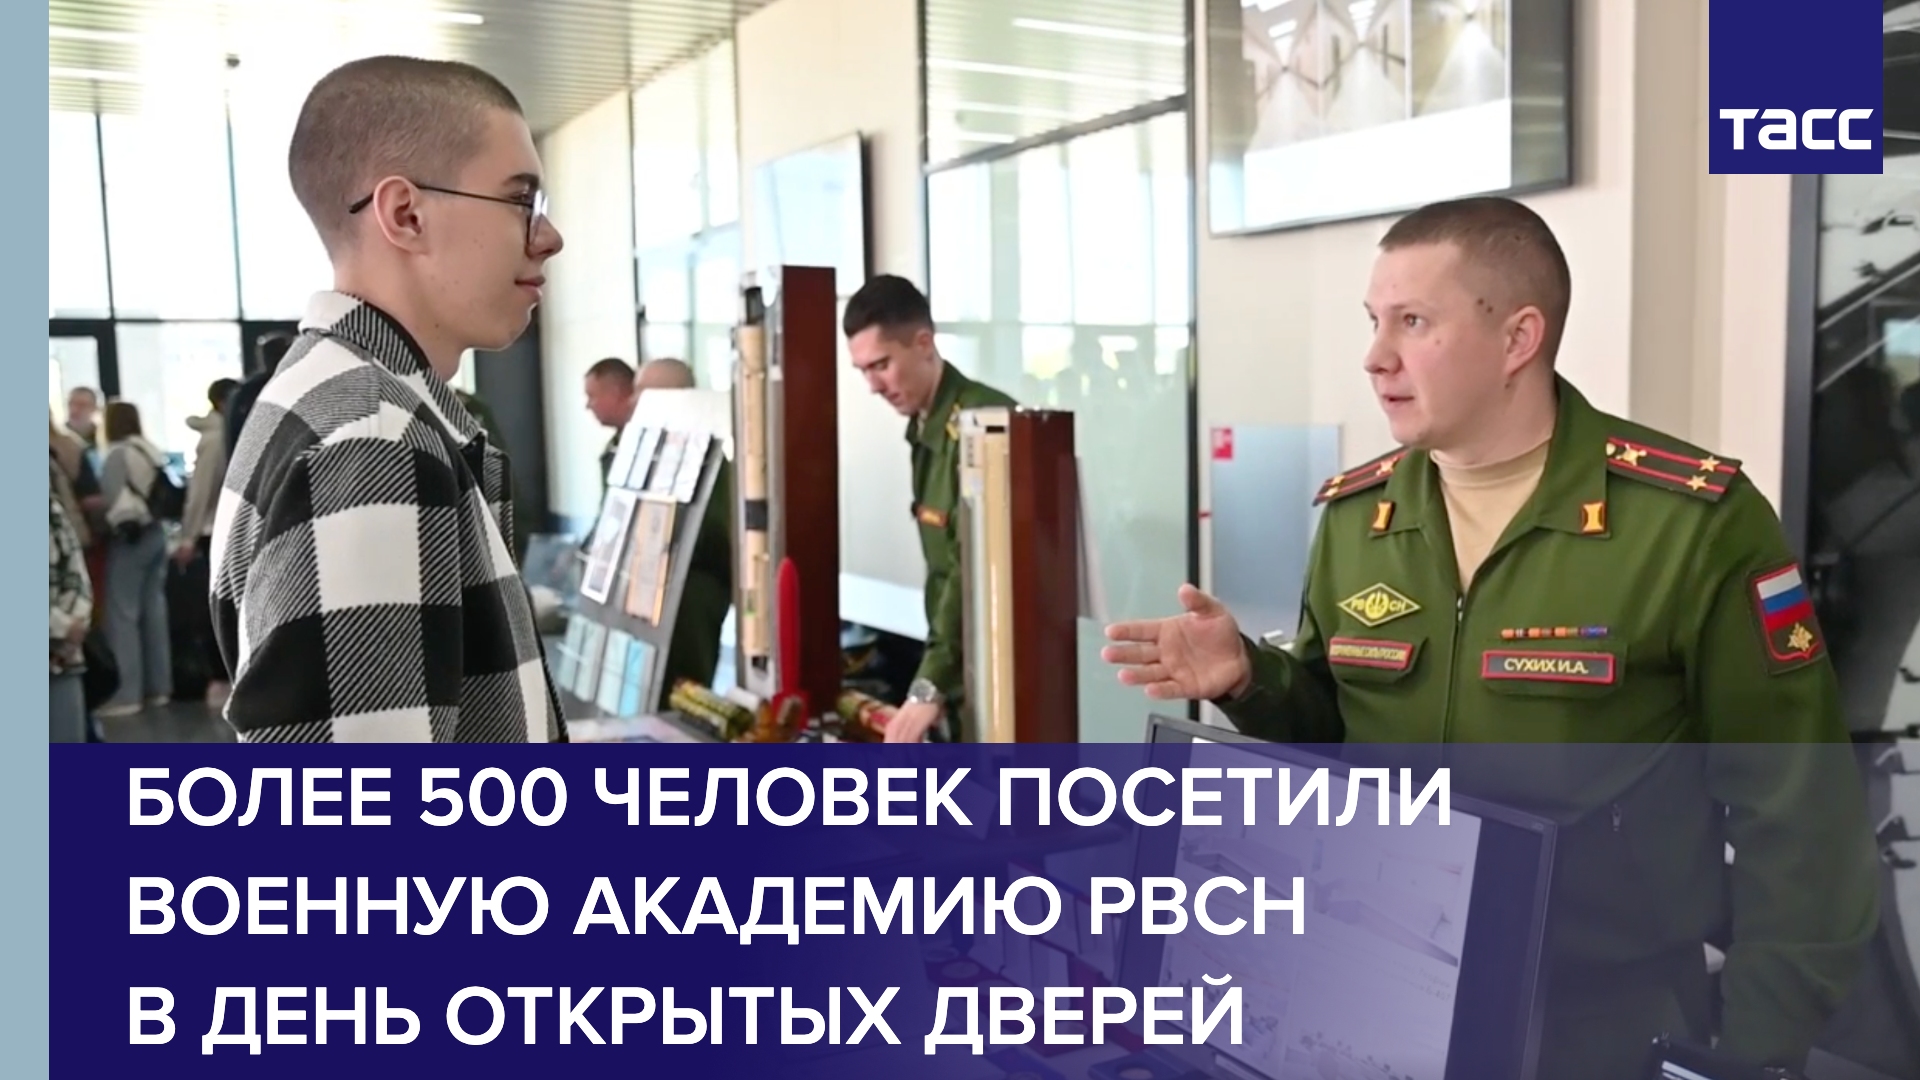 Более 500 человек посетили Военную академию РВСН в День открытых дверей